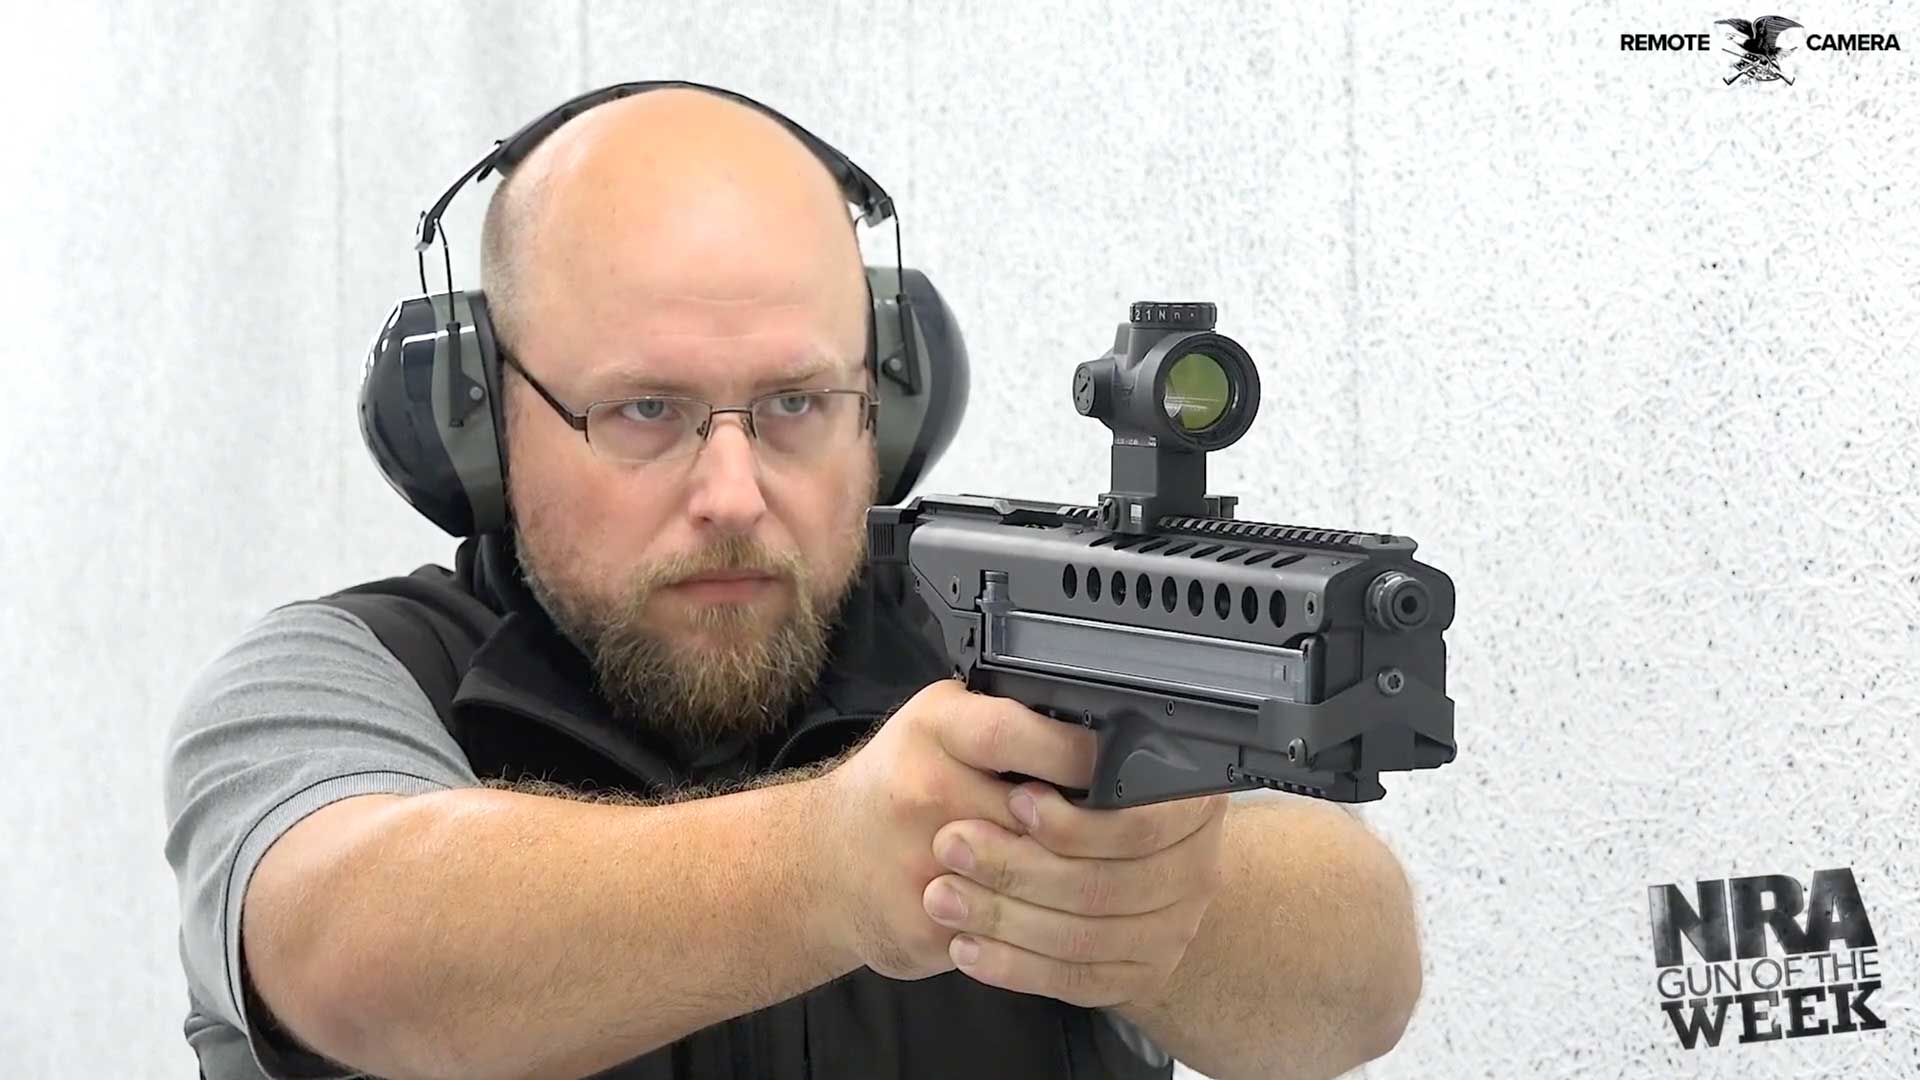 man holding gun earmuffs pistol black metal shooting range white walls text on image noting "remote camera nra gun of the week"